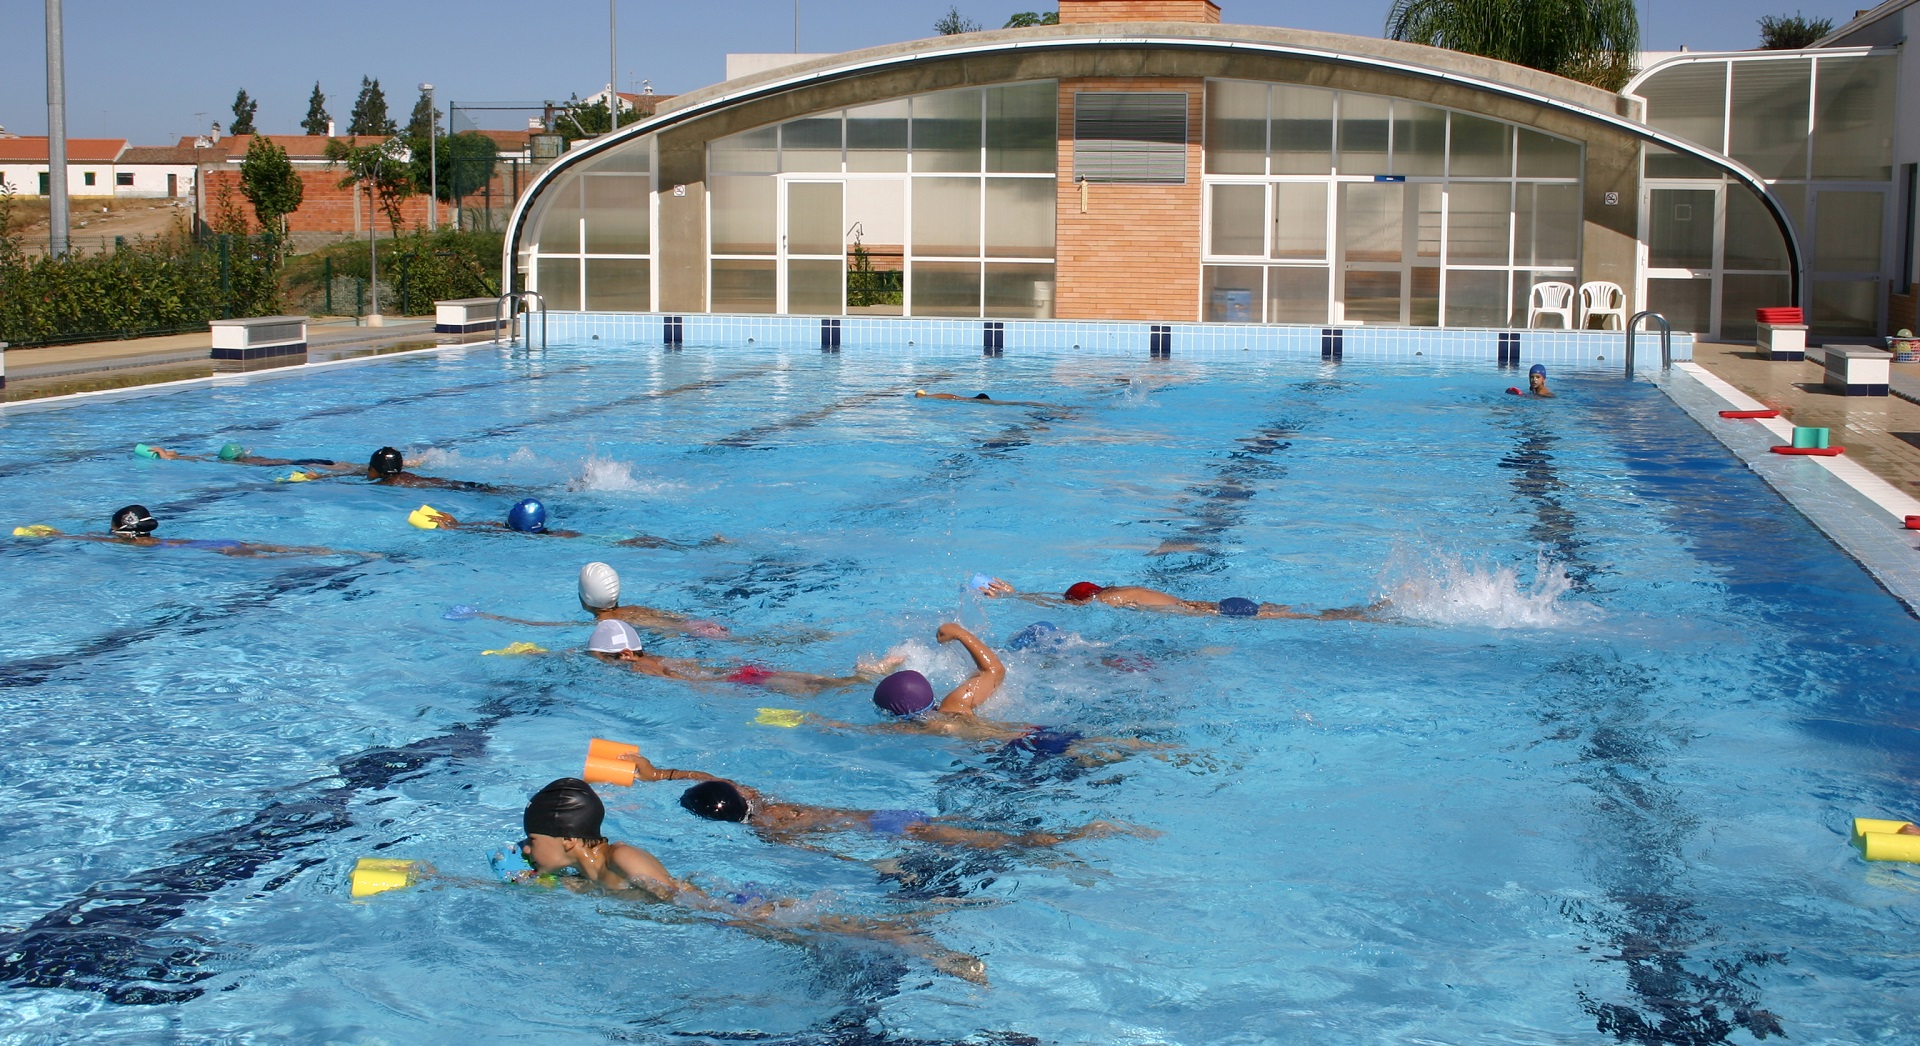 Época balnear teve início no sábado nas piscinas do concelho